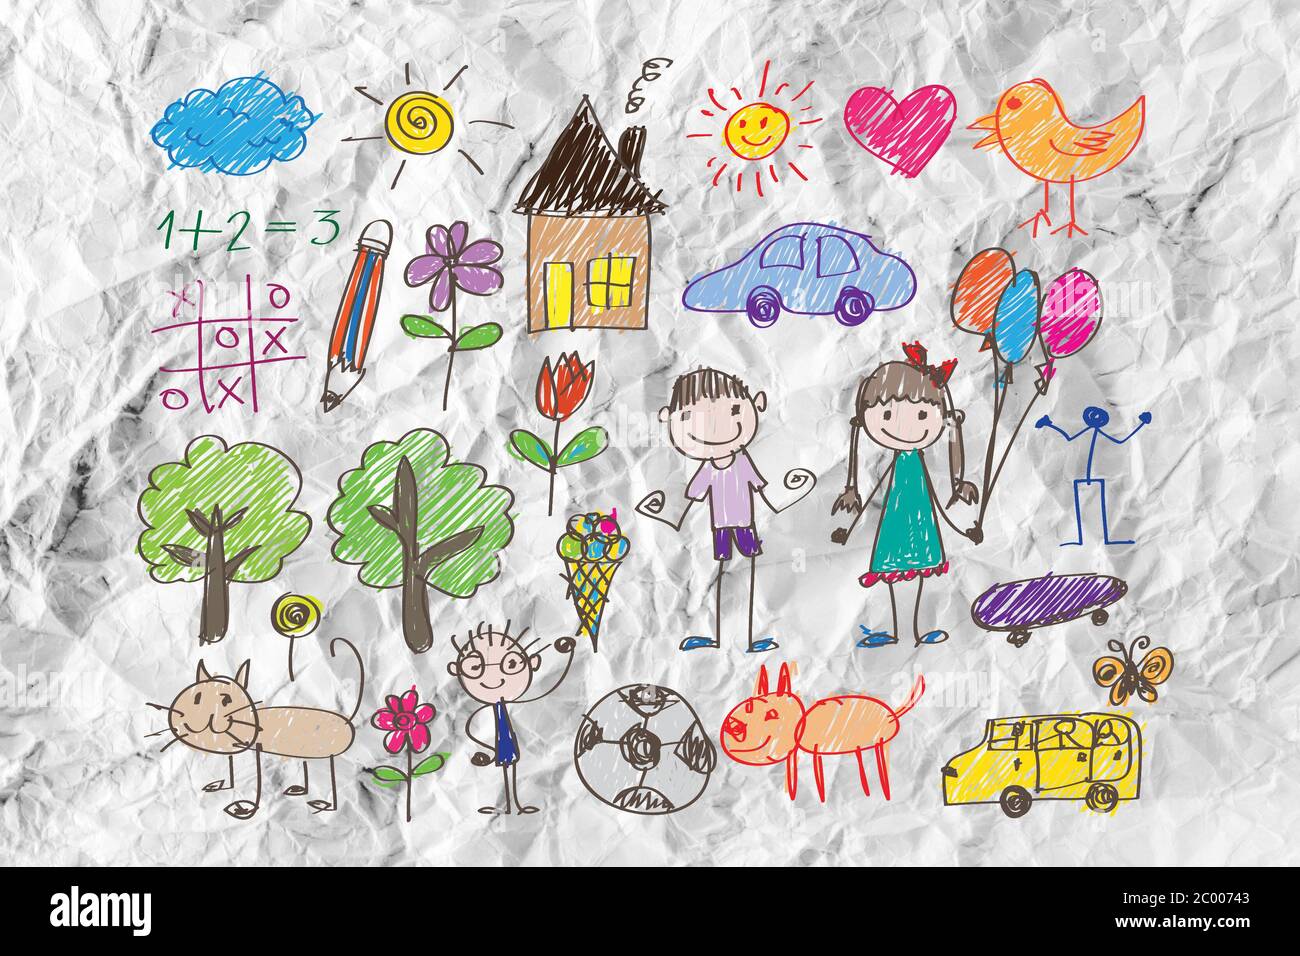 Bambini i disegni idea design su carta sgualcita Foto Stock